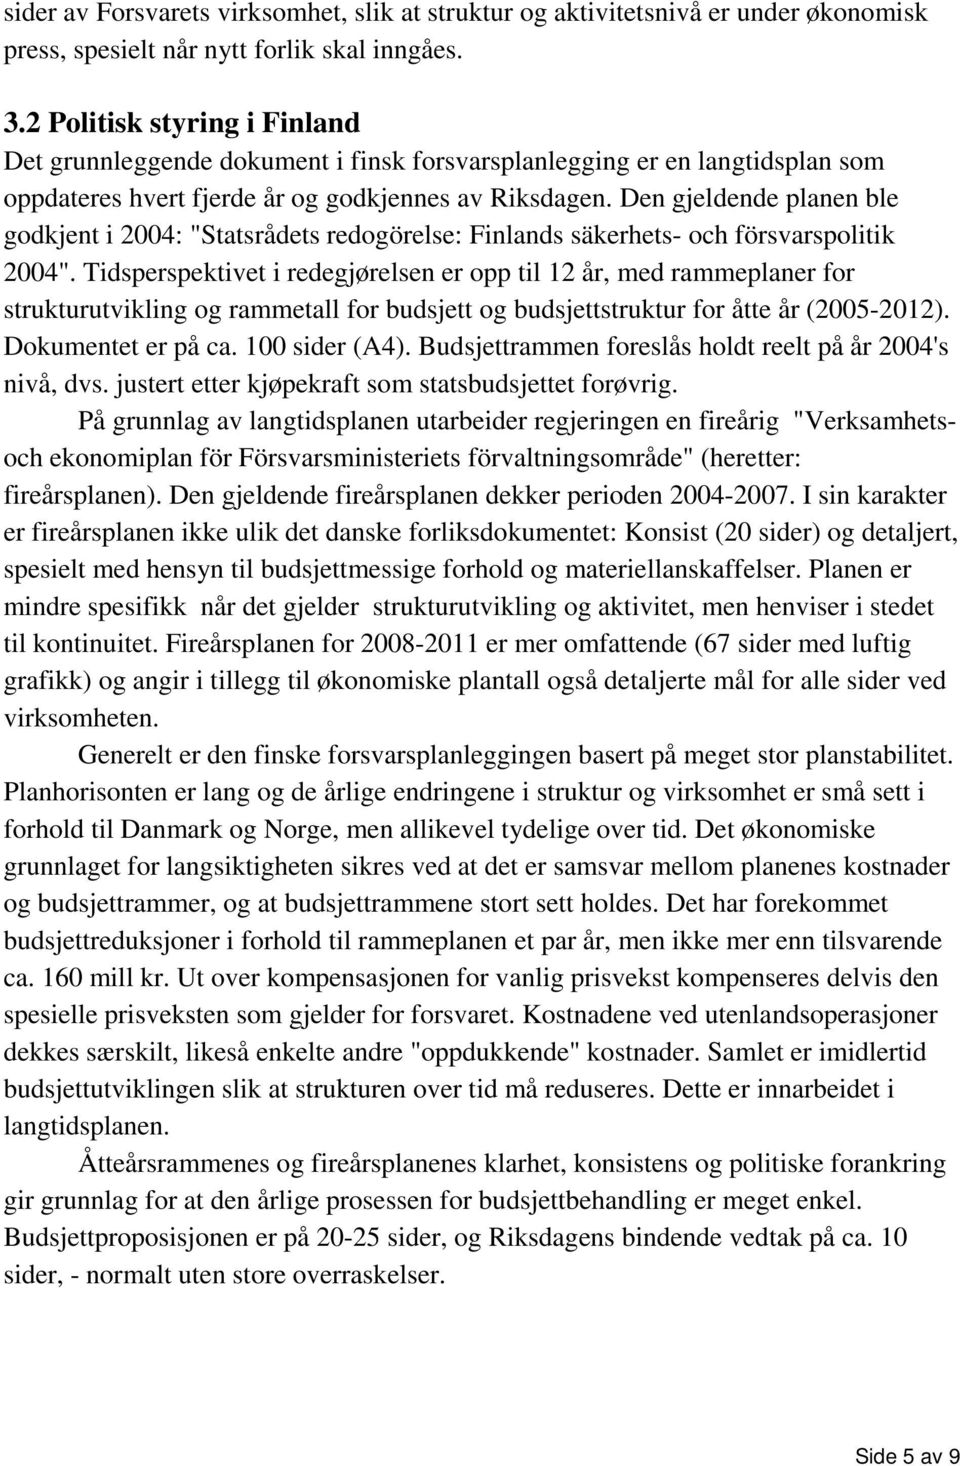 Den gjeldende planen ble godkjent i 2004: "Statsrådets redogörelse: Finlands säkerhets- och försvarspolitik 2004".